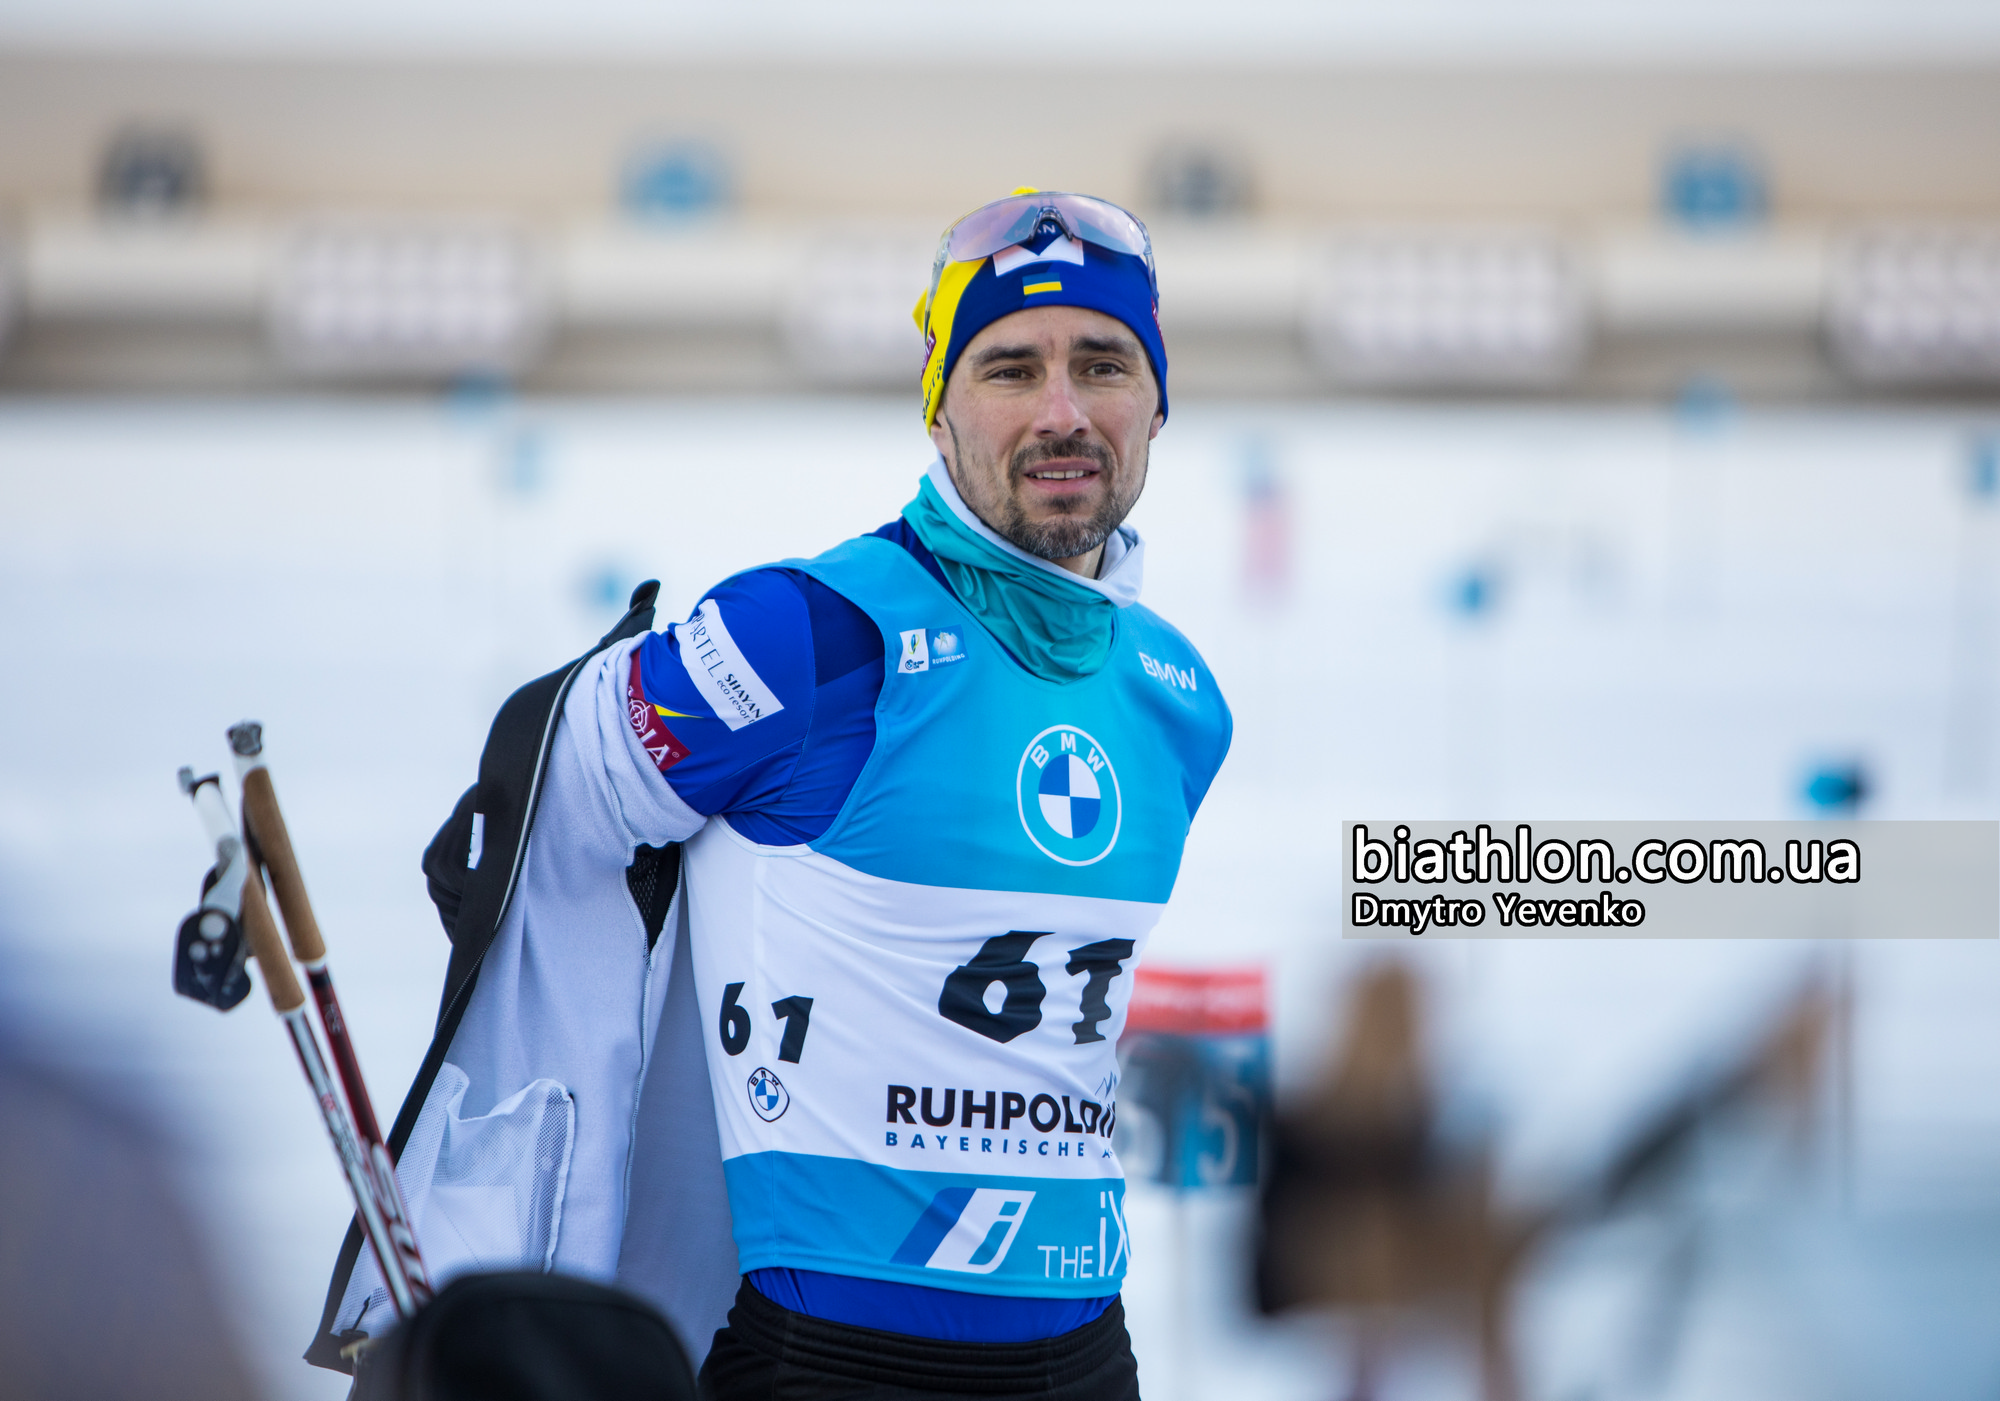 https://www.biathlon.com.ua/ua/uploads/2022/132957.jpg